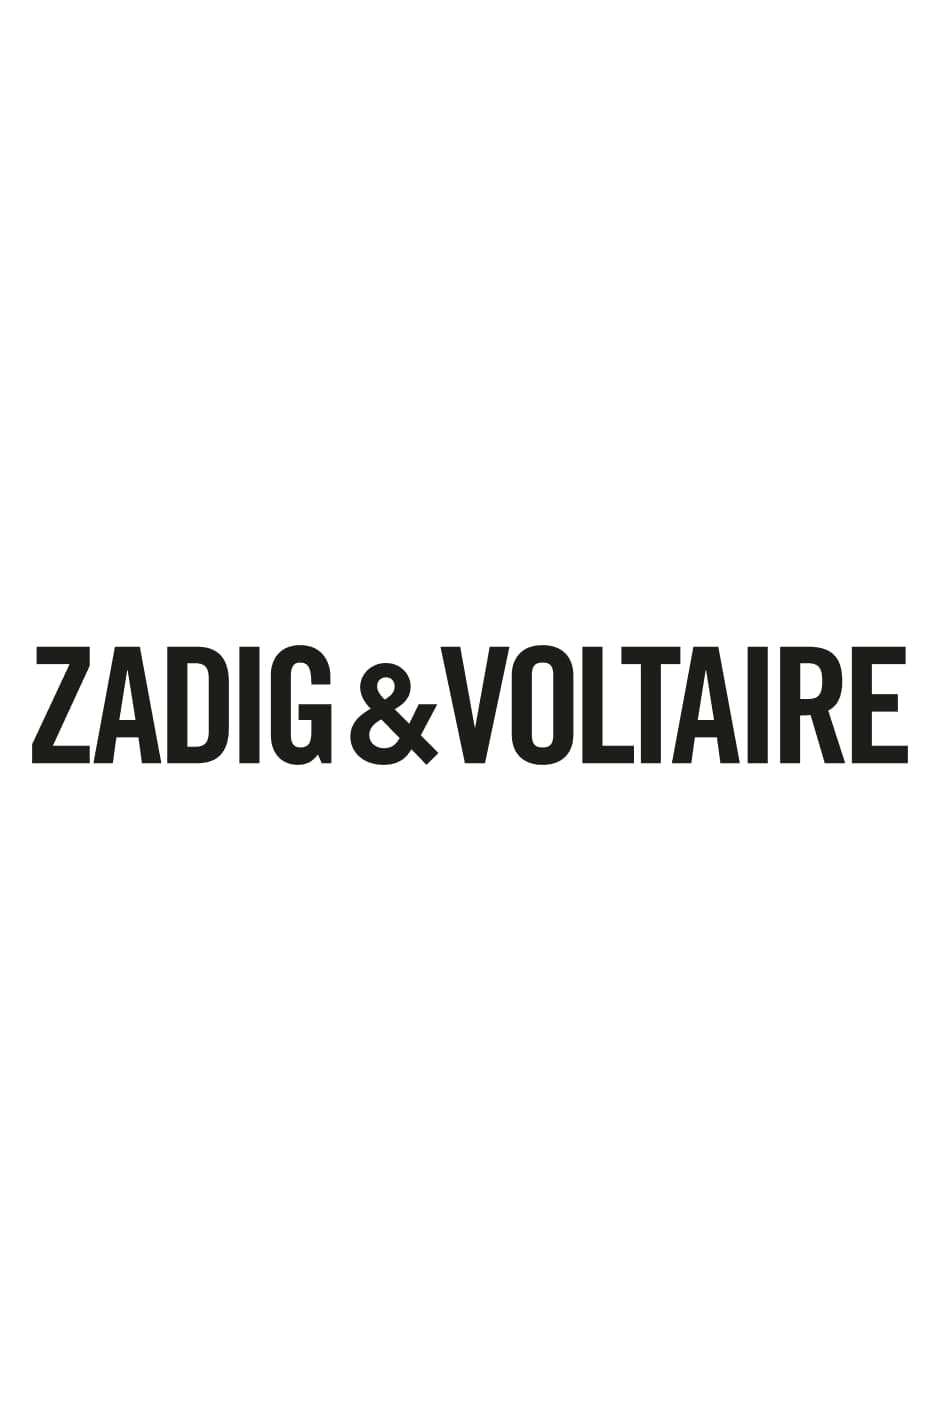 T-Shirt Walk Wappen Damen-T-Shirt aus ecrufarbener Baumwolle mit Metallic-Wappen Zadig&Voltaire